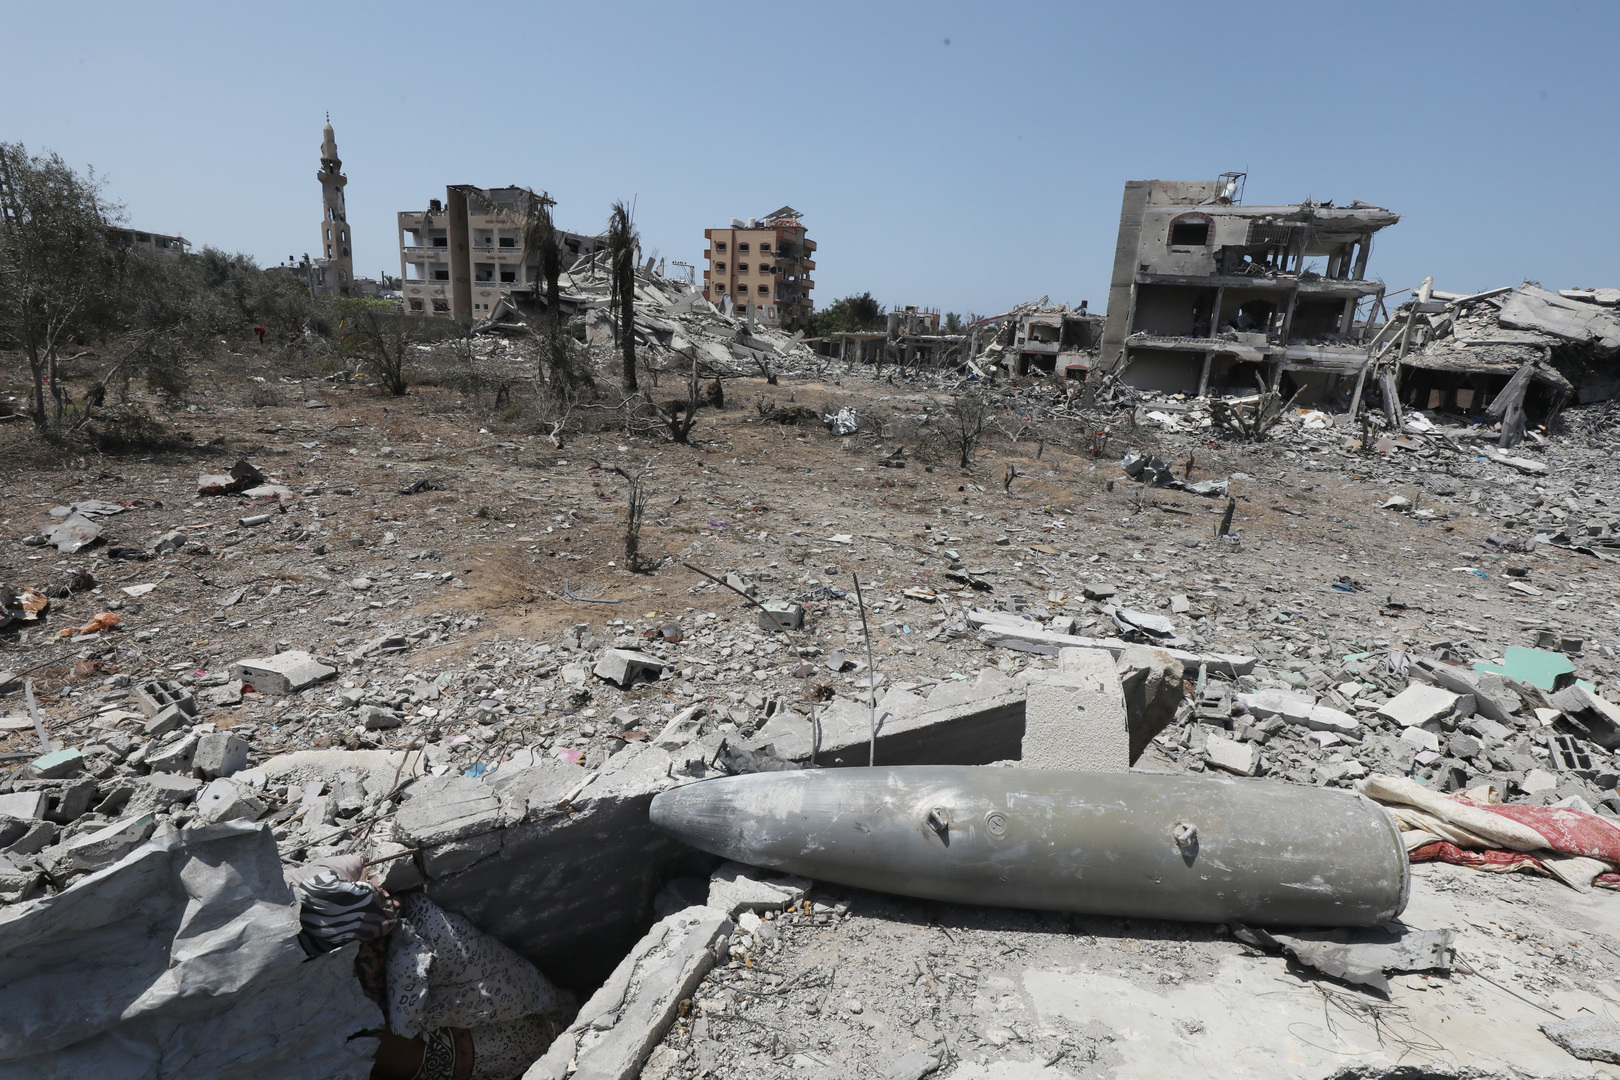 كتائب القسام تنشر مشاهد قنص جندي إسرائيلي في غزة